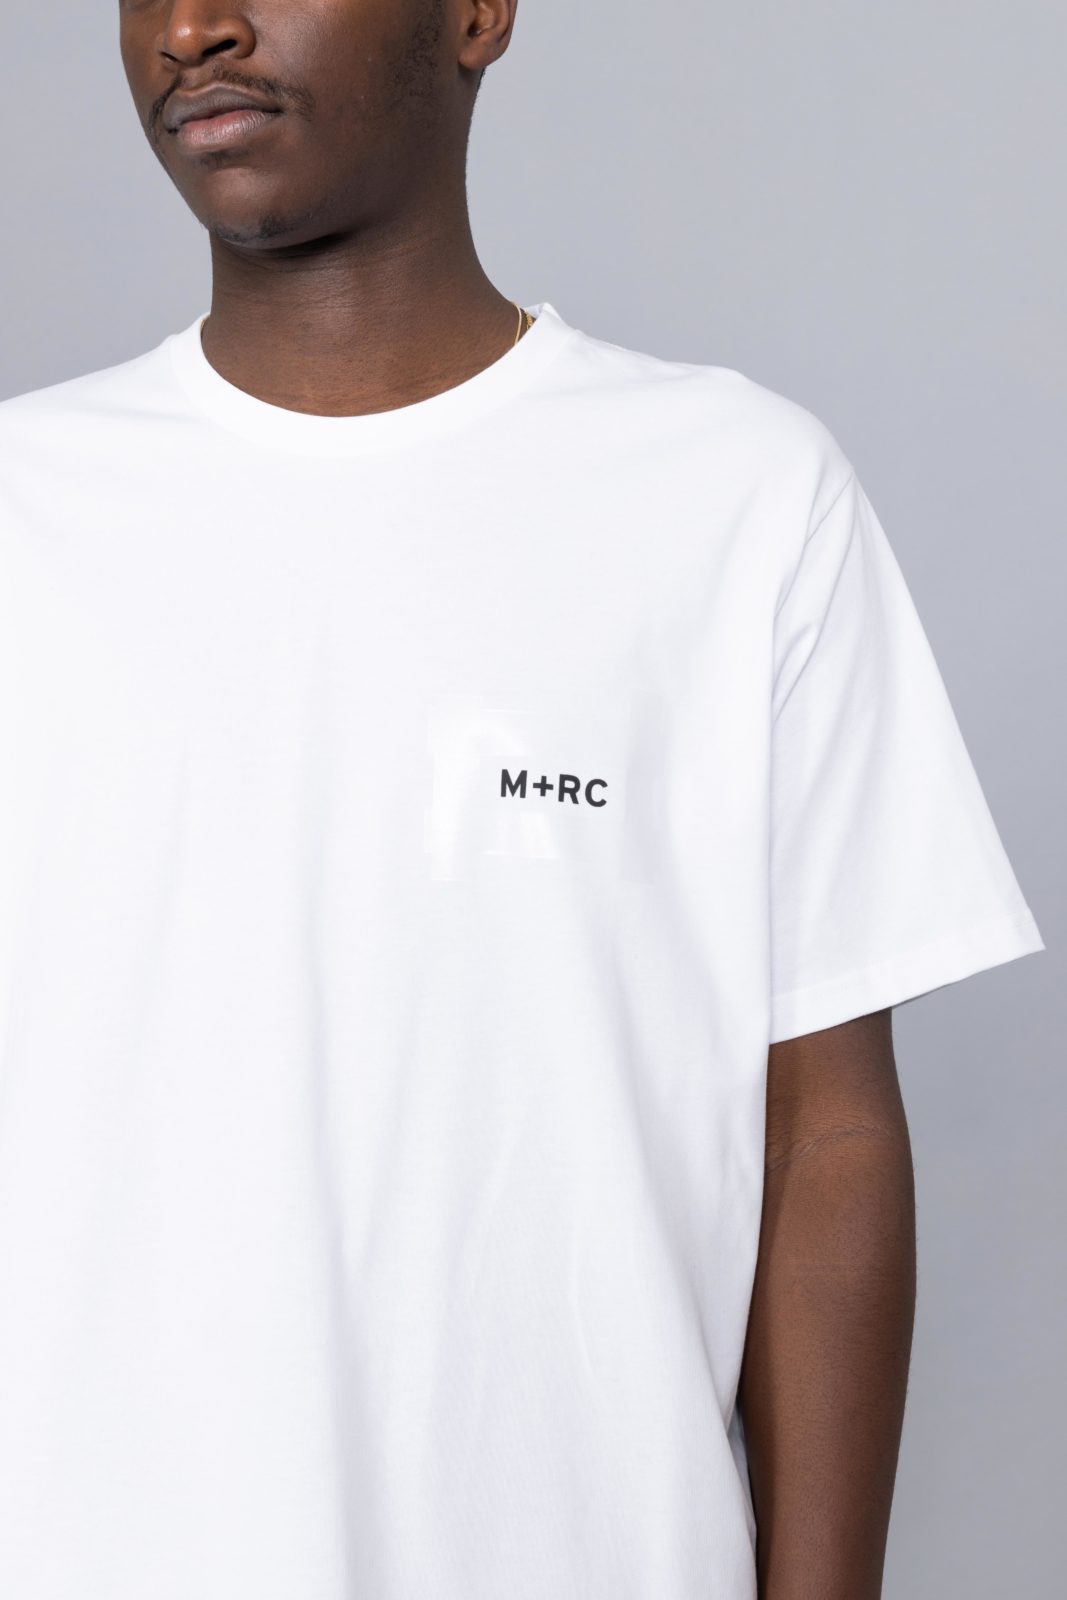 しただけで Supreme - m+rc noir Tシャツの通販 by ああ｜シュプリーム 